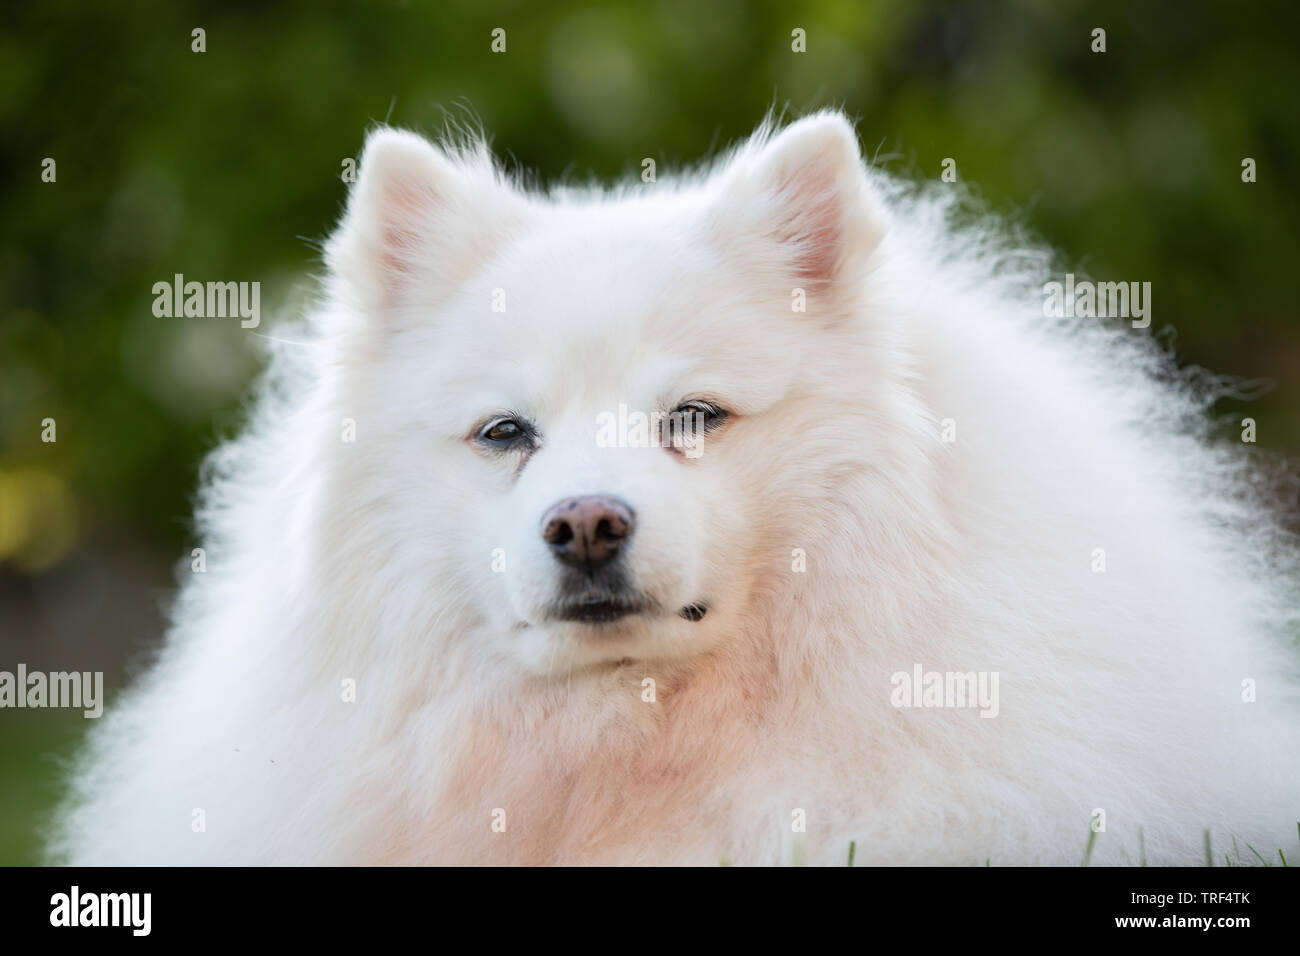 Le portrait d'un chien esquimau américain. Ces chiens sont un membre de la famille Spitz, originaires de l'Allemagne. Banque D'Images